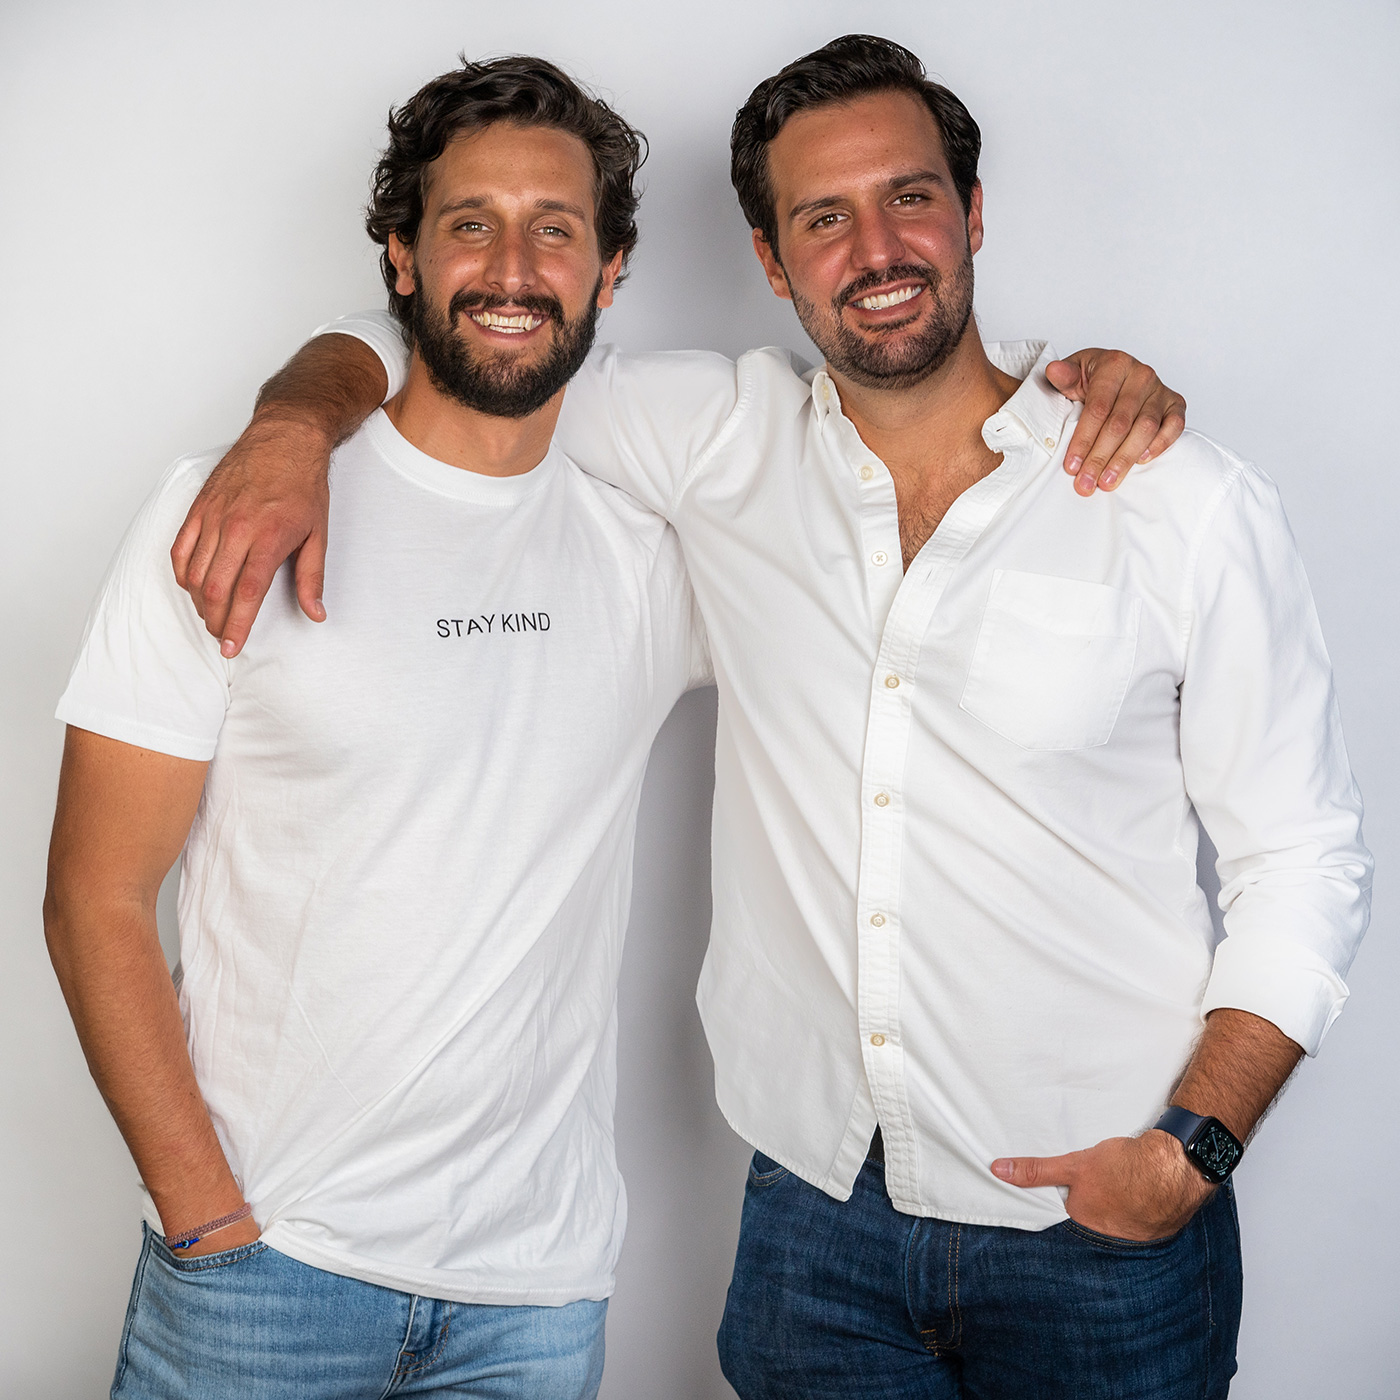 Founders Mauricio and Diego De La Torre